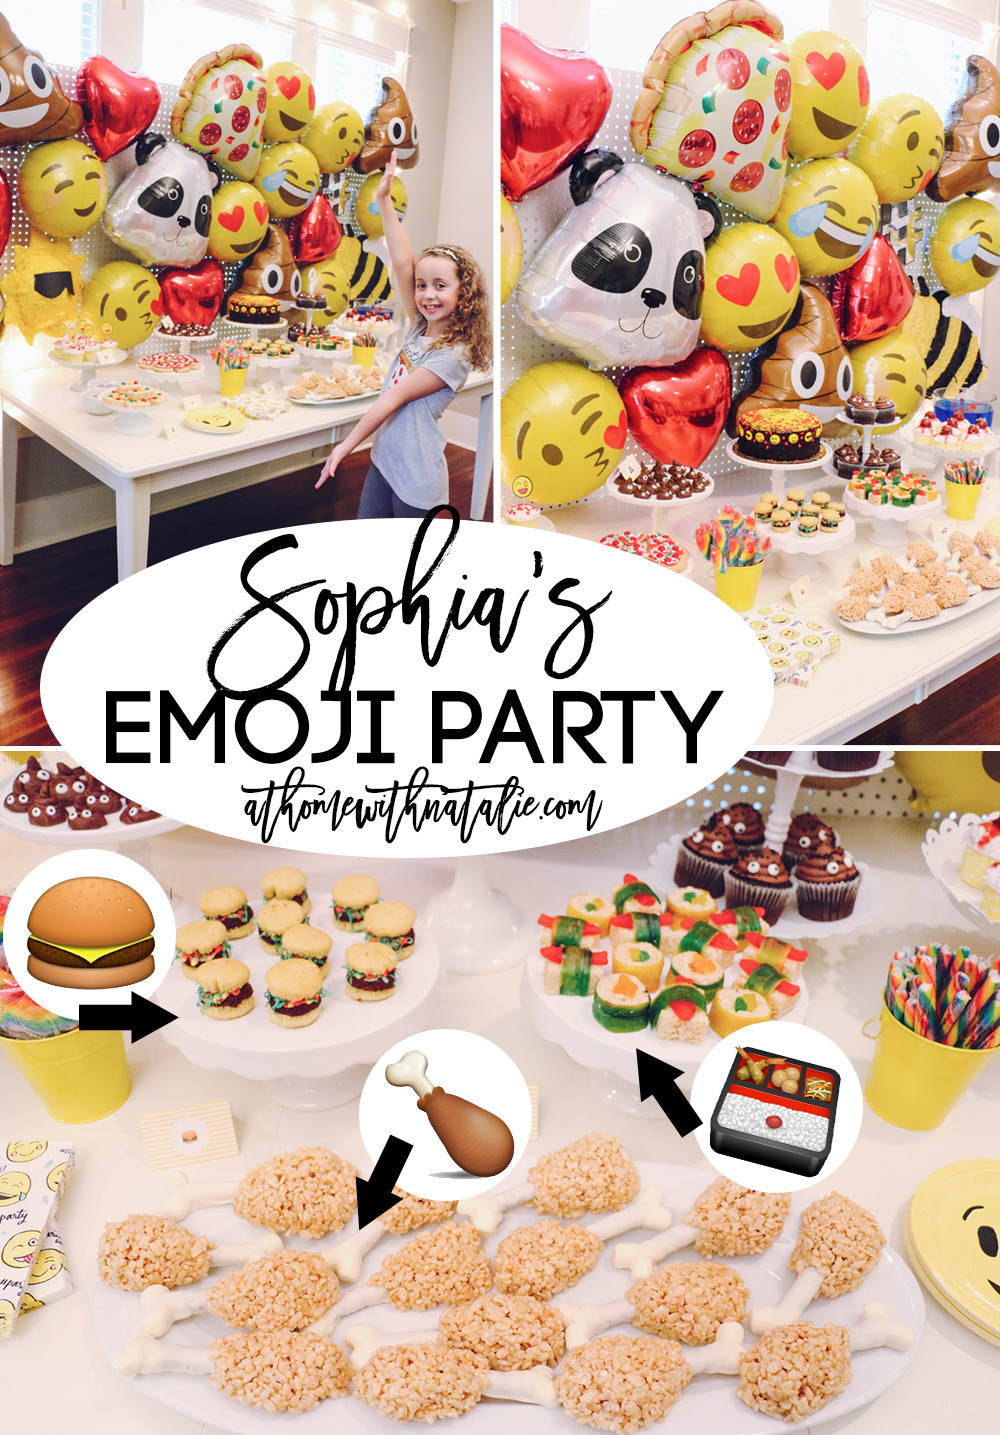 Best ideas about Emoji Birthday Party Ideas
. Save or Pin Sophia’s Emoji Birthday Party – At Home With Natalie Now.